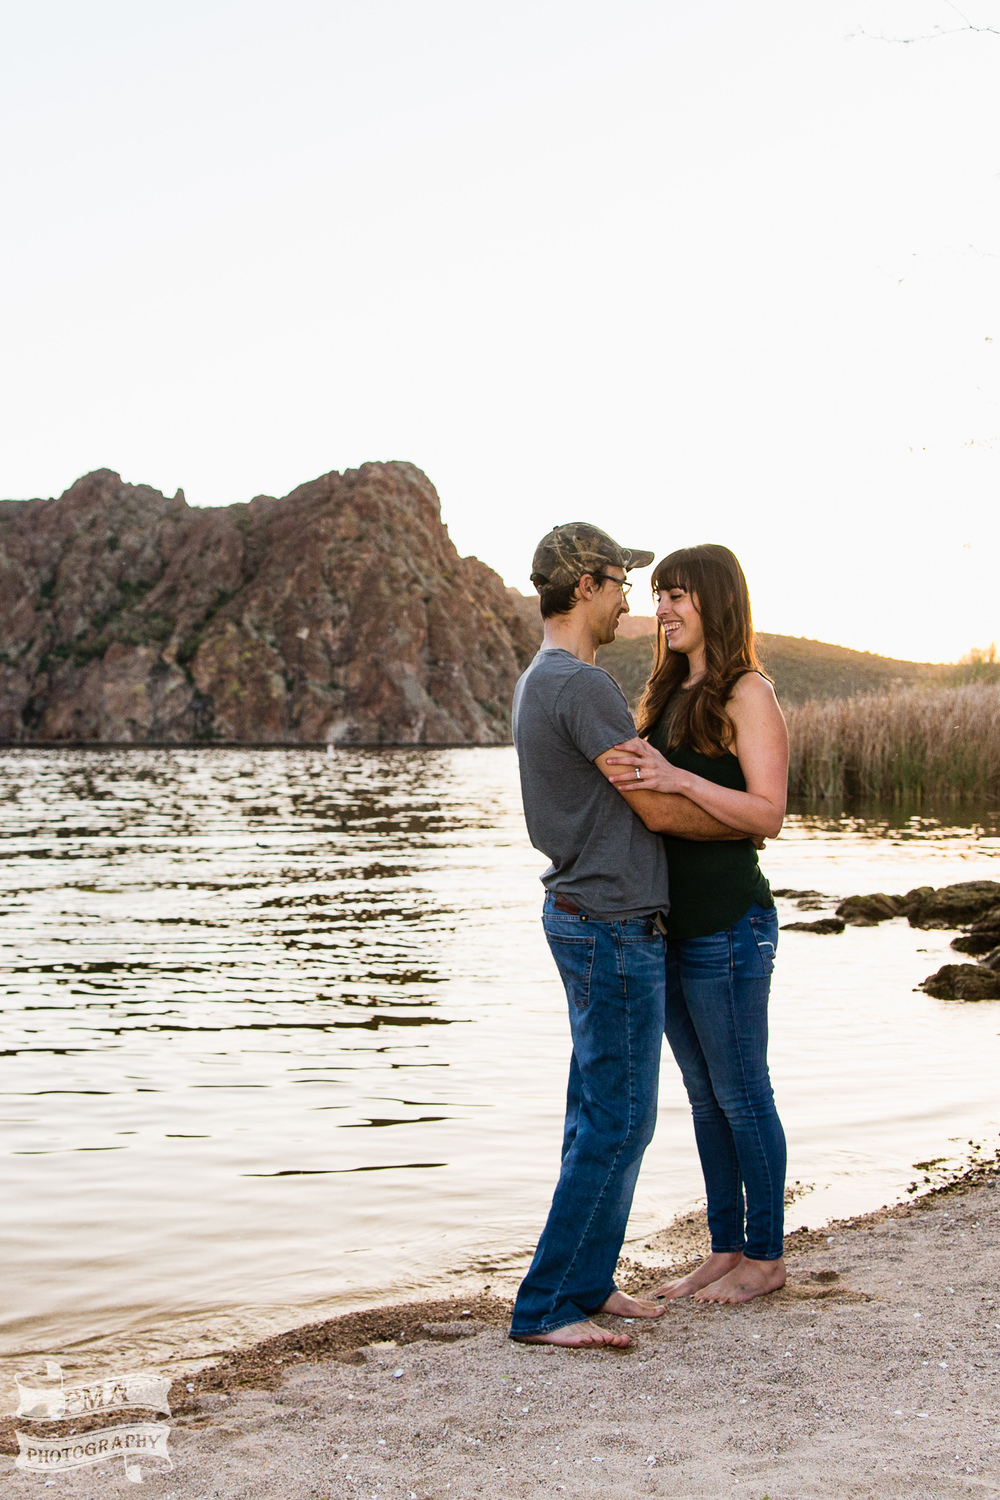 Engagement Photography - Saguaro Lake, Arizona - PMA Photography